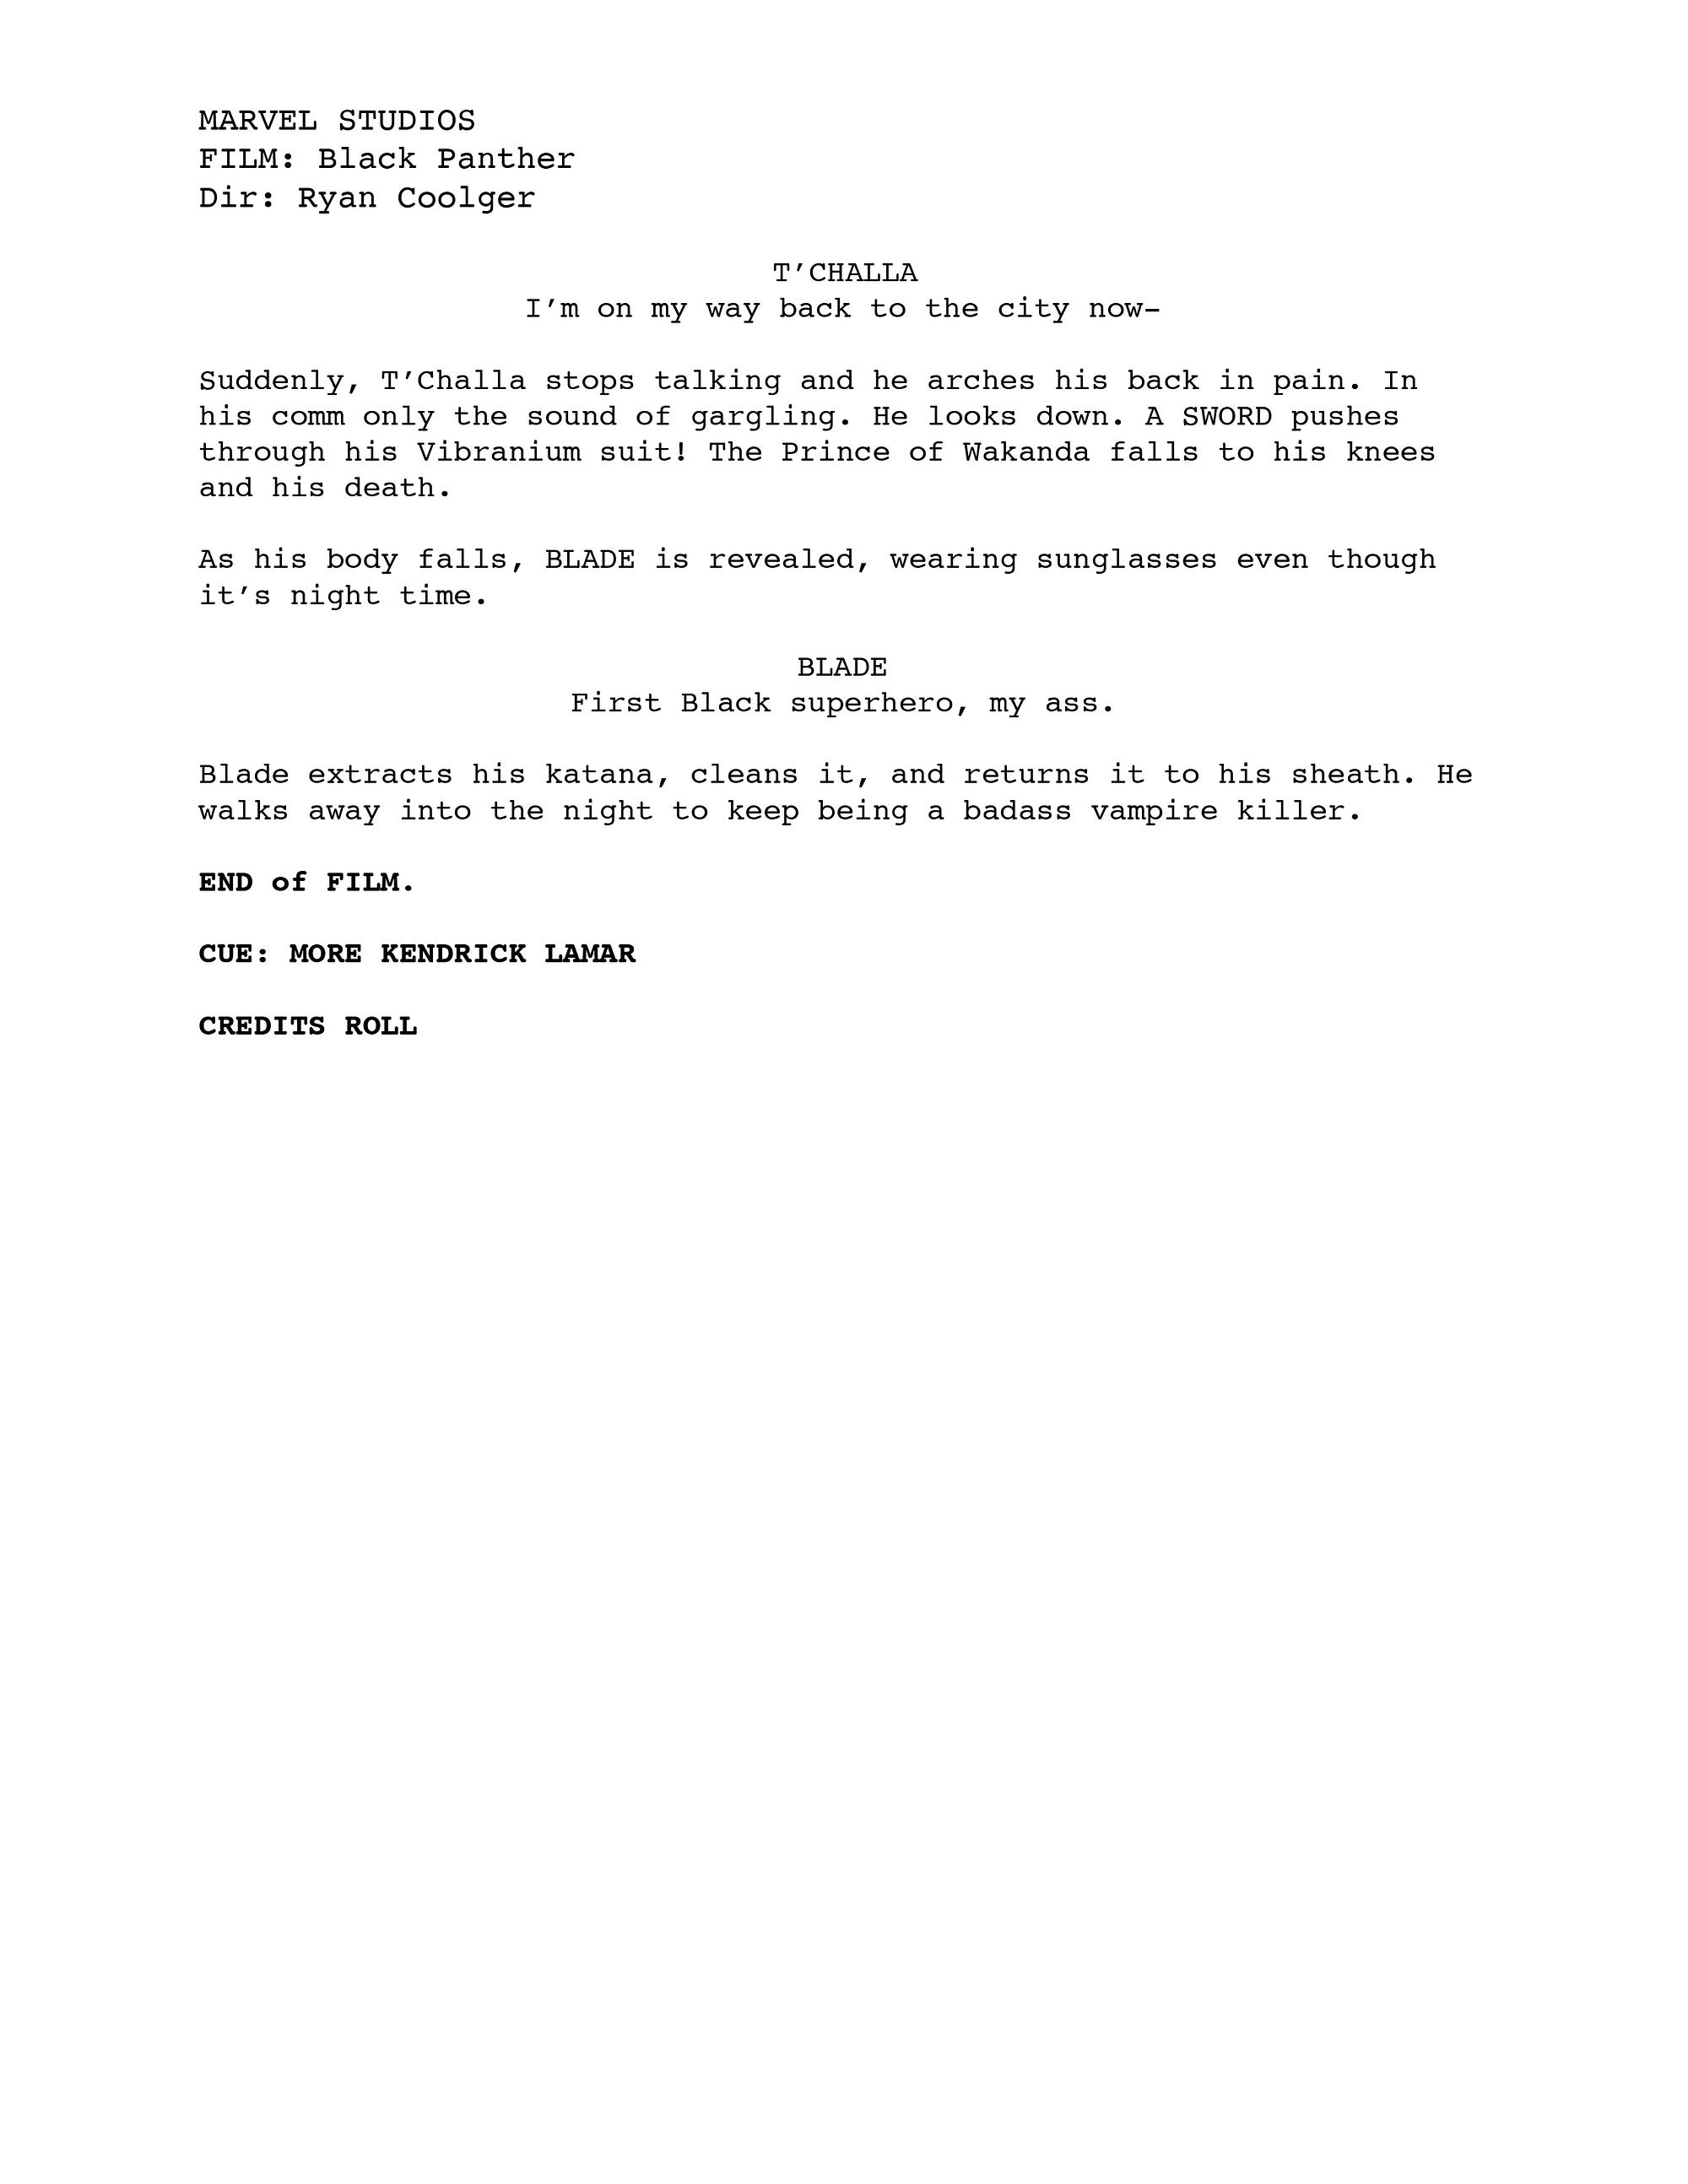 marvel movie scripts pdf